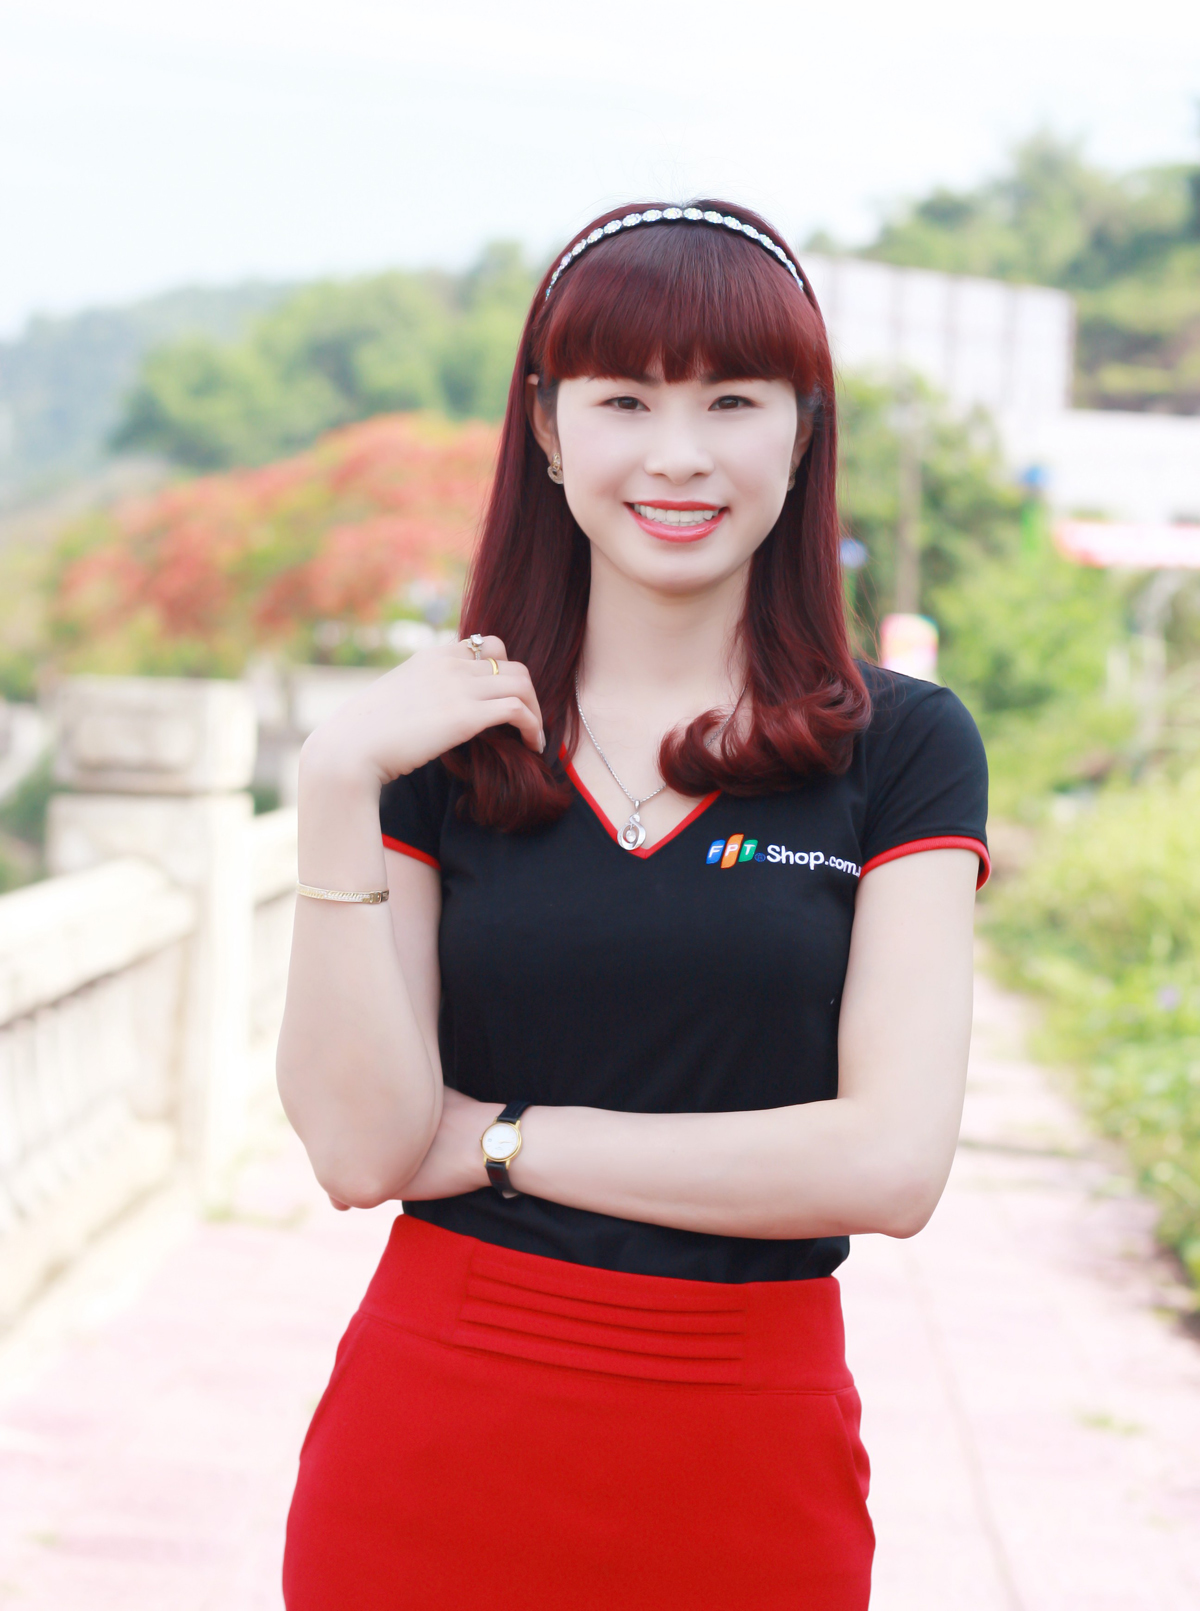 <p> Chị Kiều Oanh gia nhập FPT Shop ngày 12/8/2014 với vị trí Quản lý cửa hàng FPT Shop 30 Nhạc Sơn, Lào Cai. Gần 2 năm sau, tháng 7/2016, chị được "đôn" lên làm quản lý khu vực 7 của FPT Shop miền Bắc 1.</p>